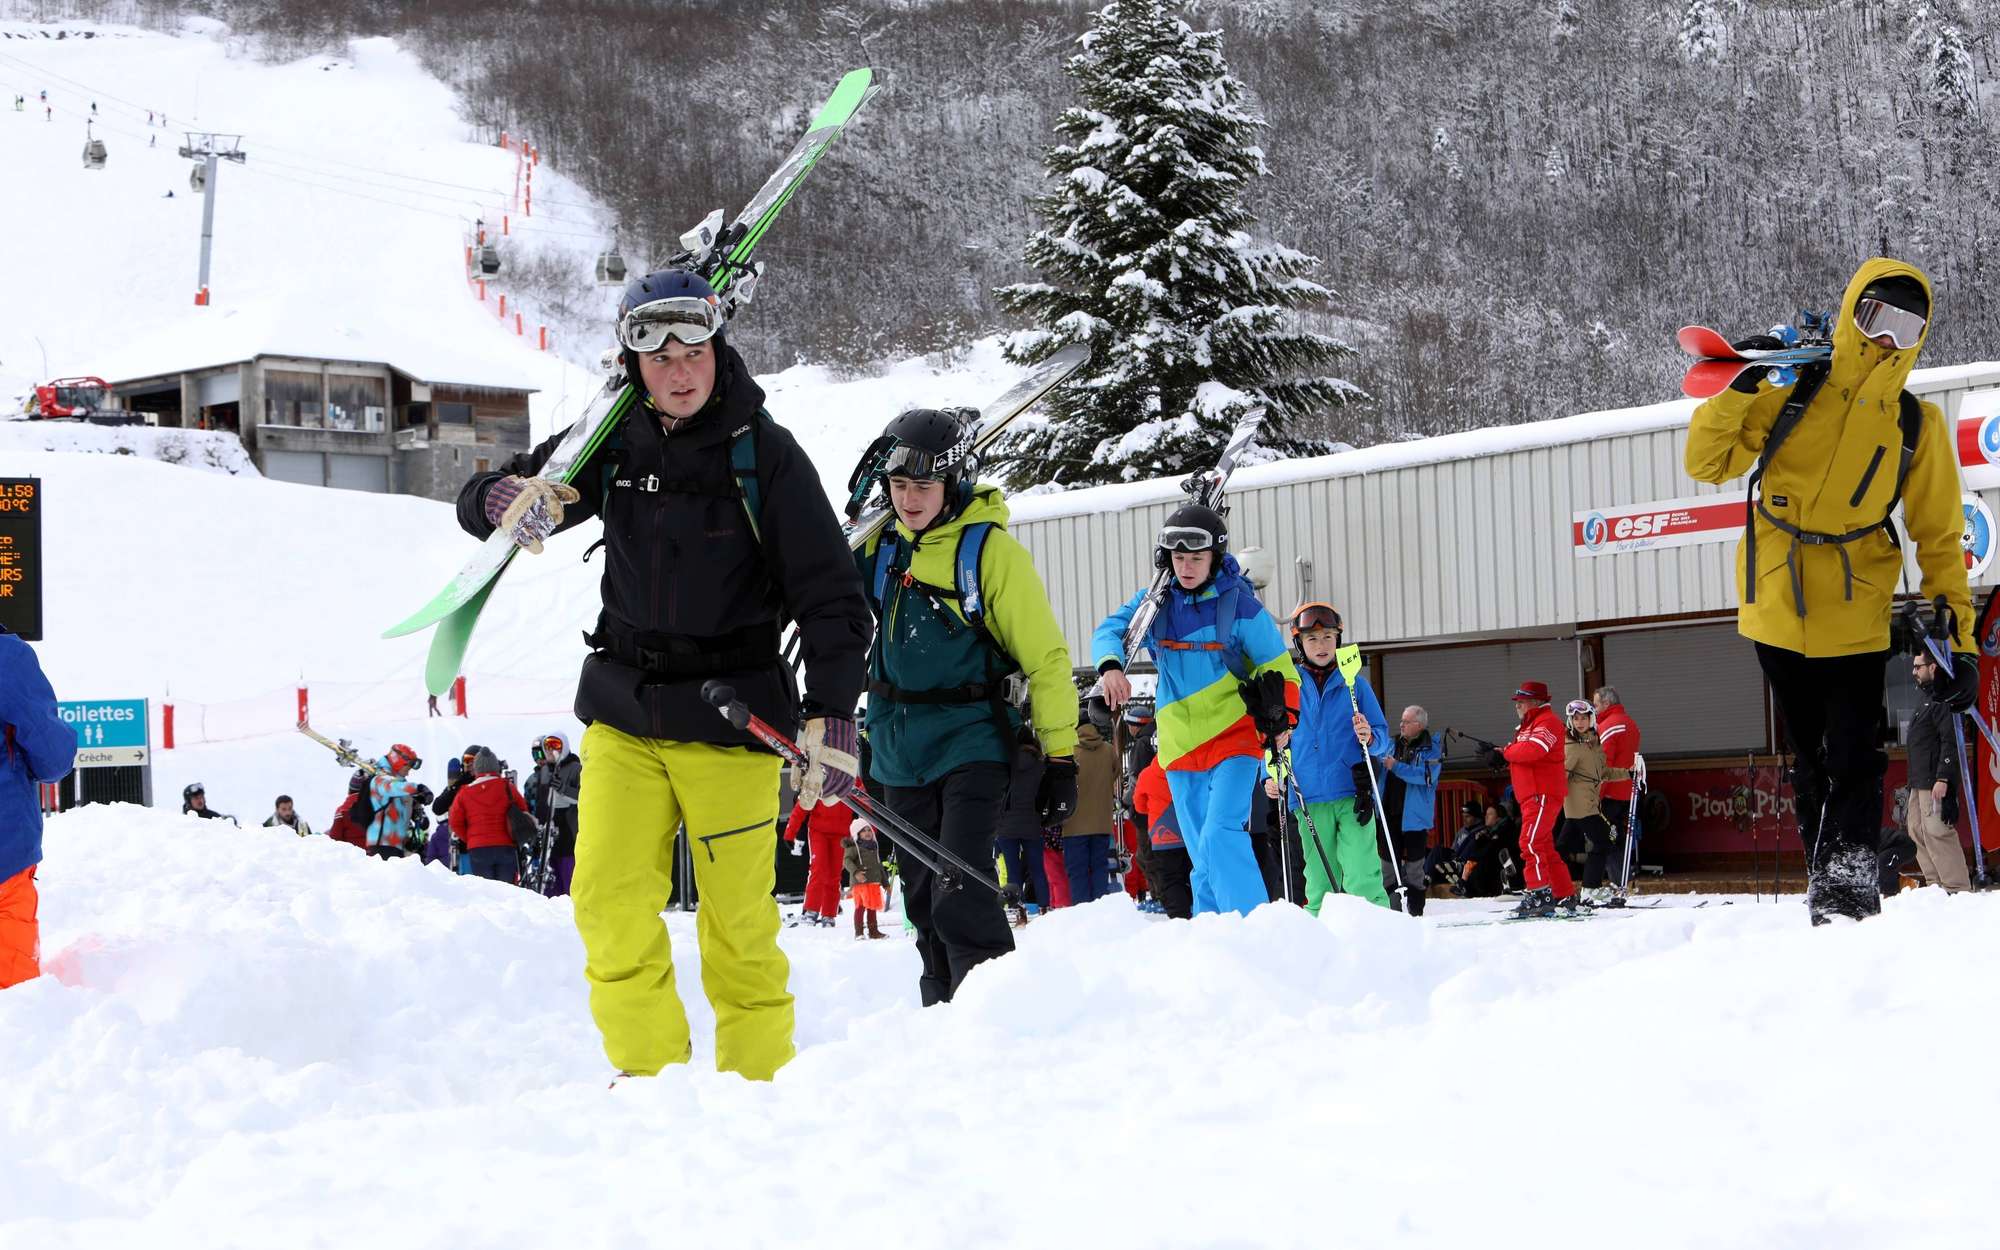 Matériel de ski : la liste de vos indispensables